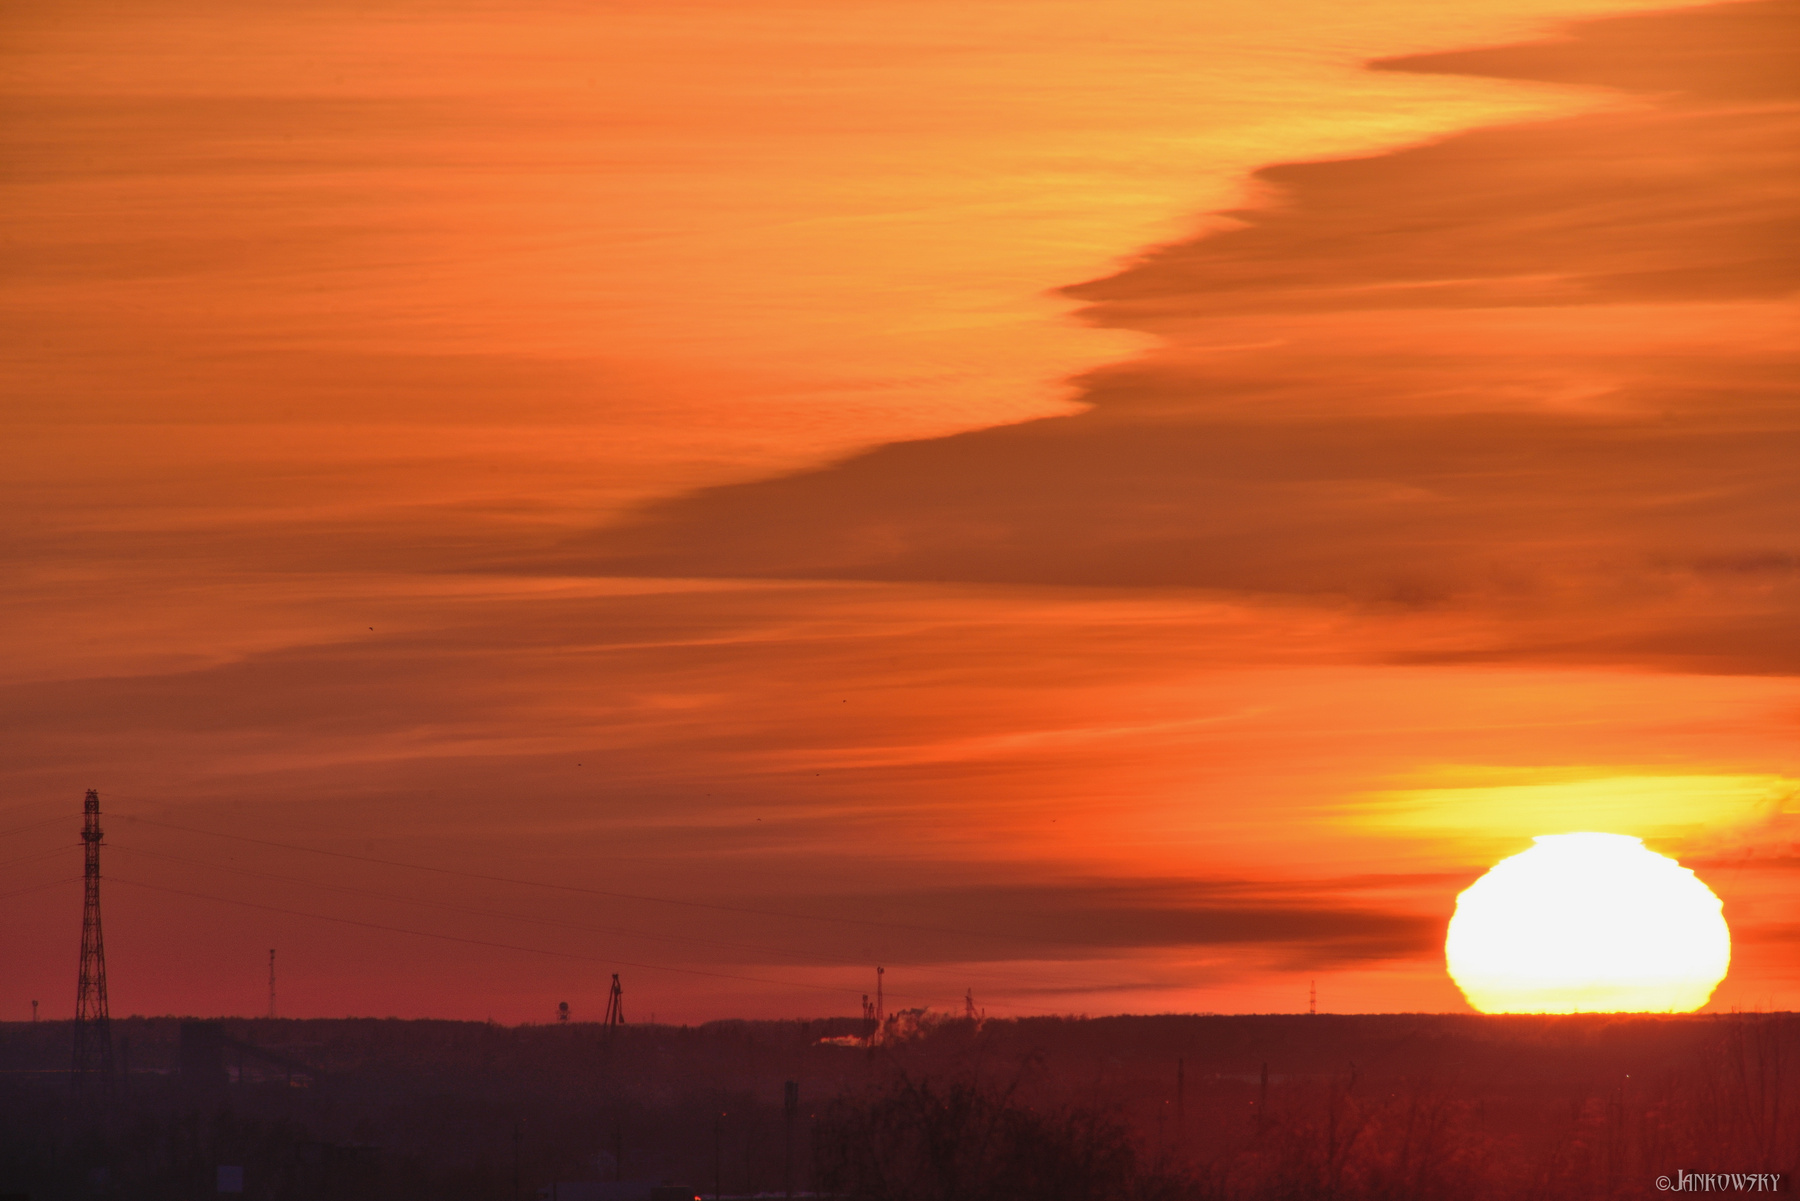 ПЕКЛО 31.03.21 омск горизонт затон кран радар солнце закат оранжевое небо пекло